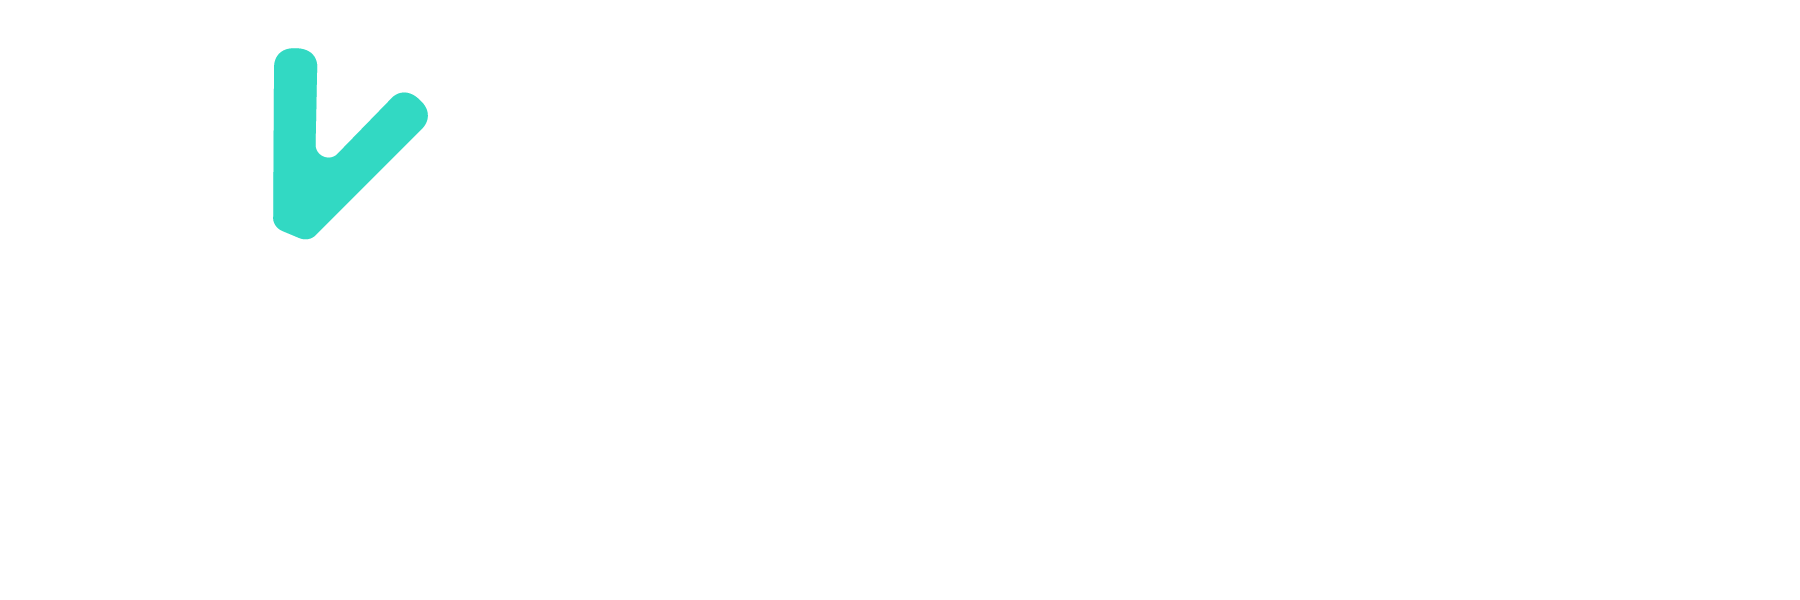 Data Vimenca logo in white